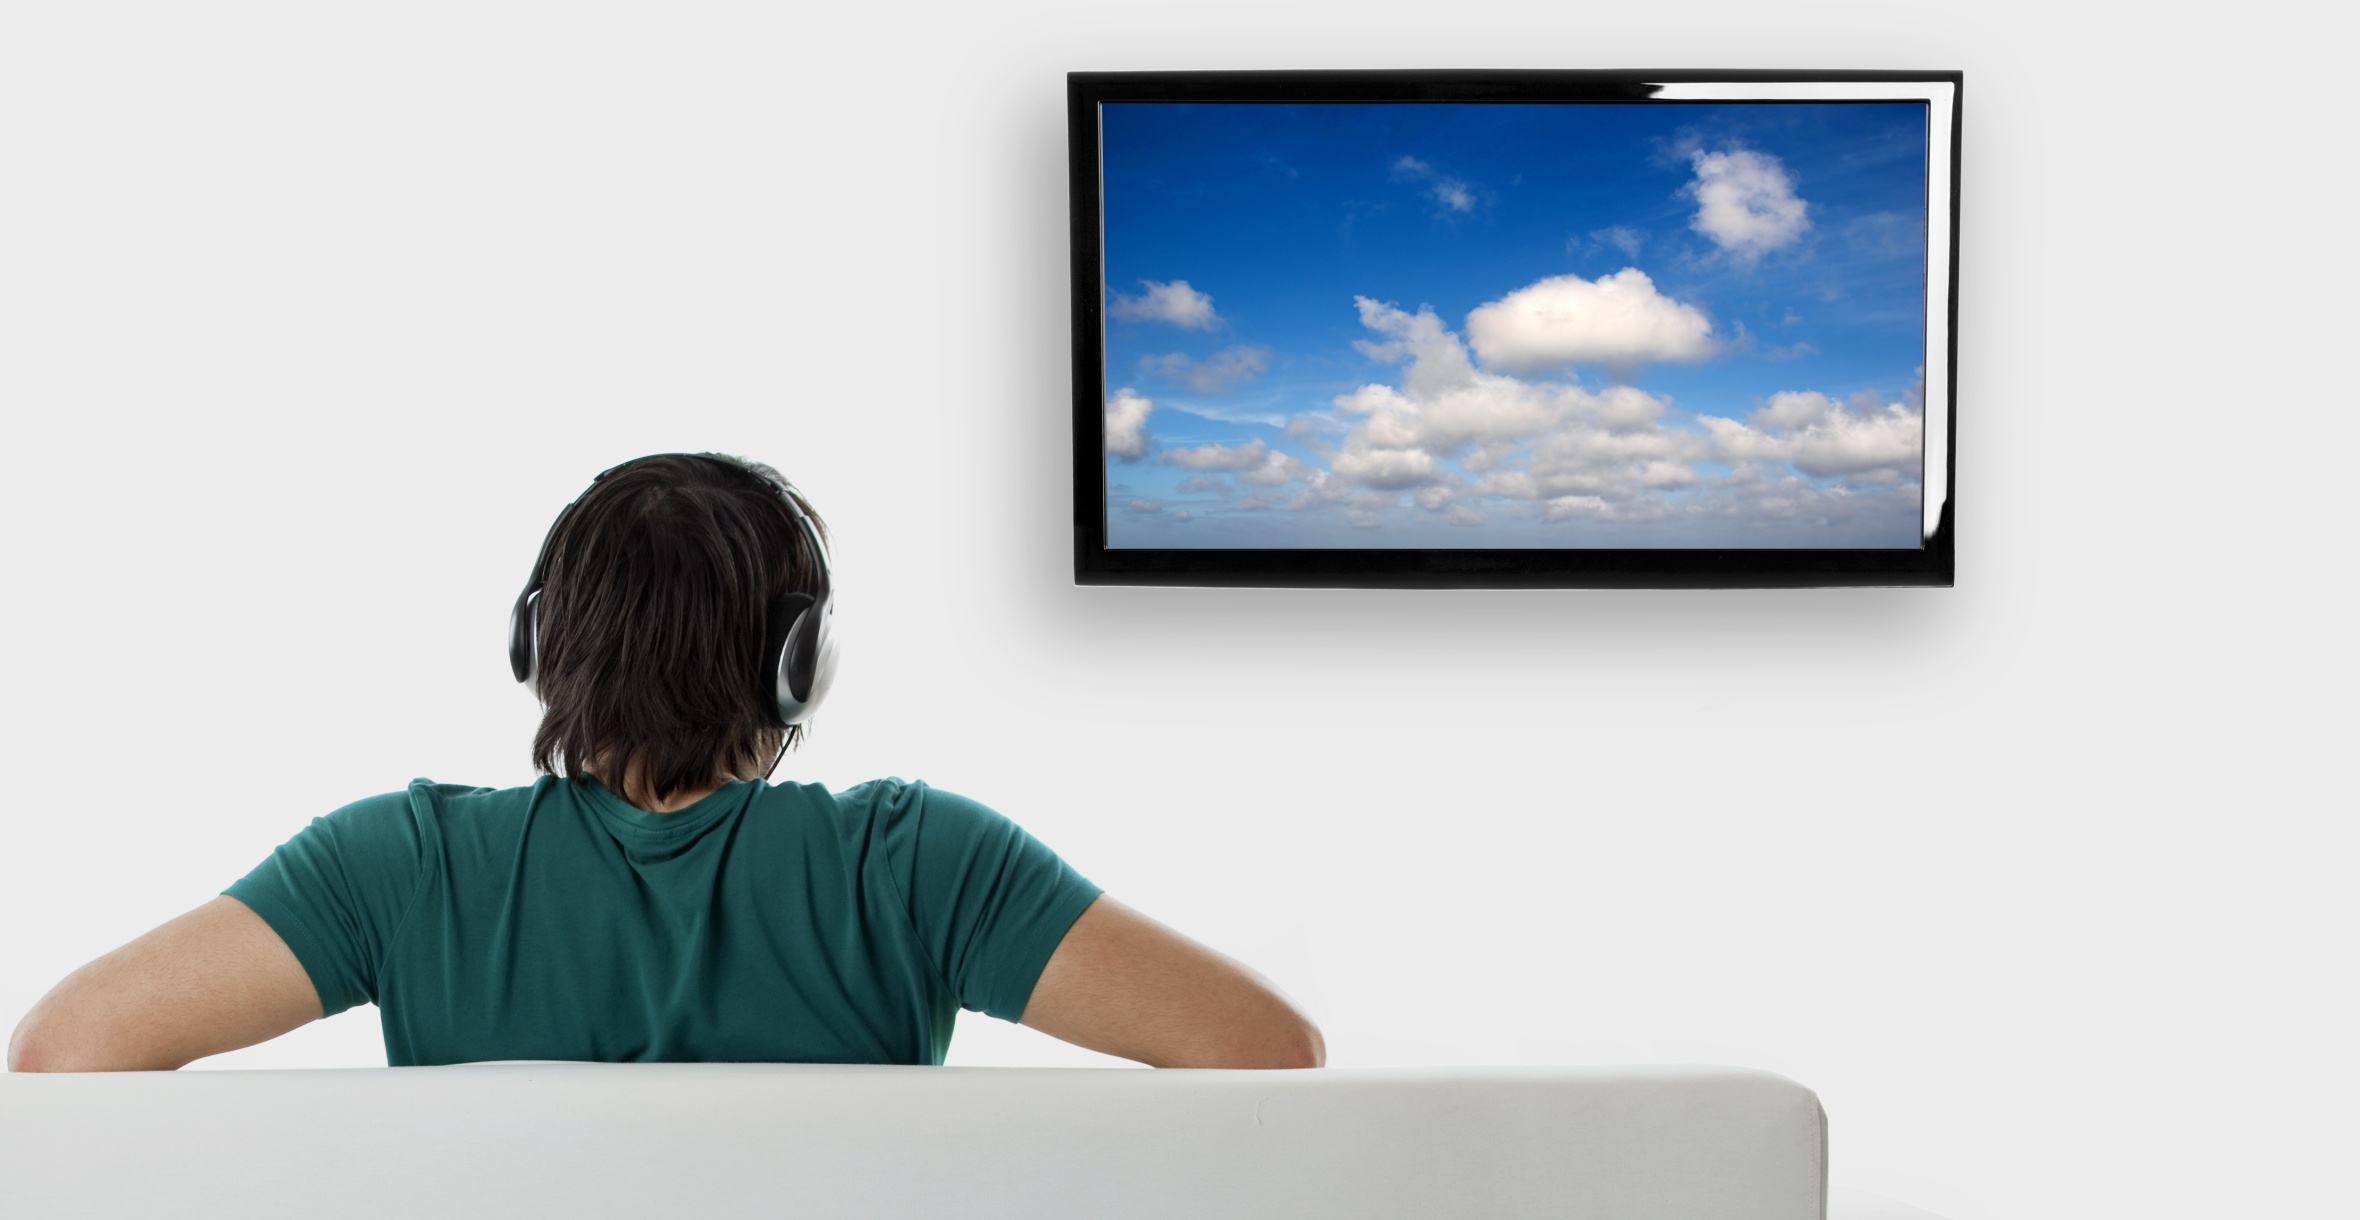 Телевизор читает видео. Телевизор. Человек телевизор. Человечек с телевизором. Телевизор на белом фоне.